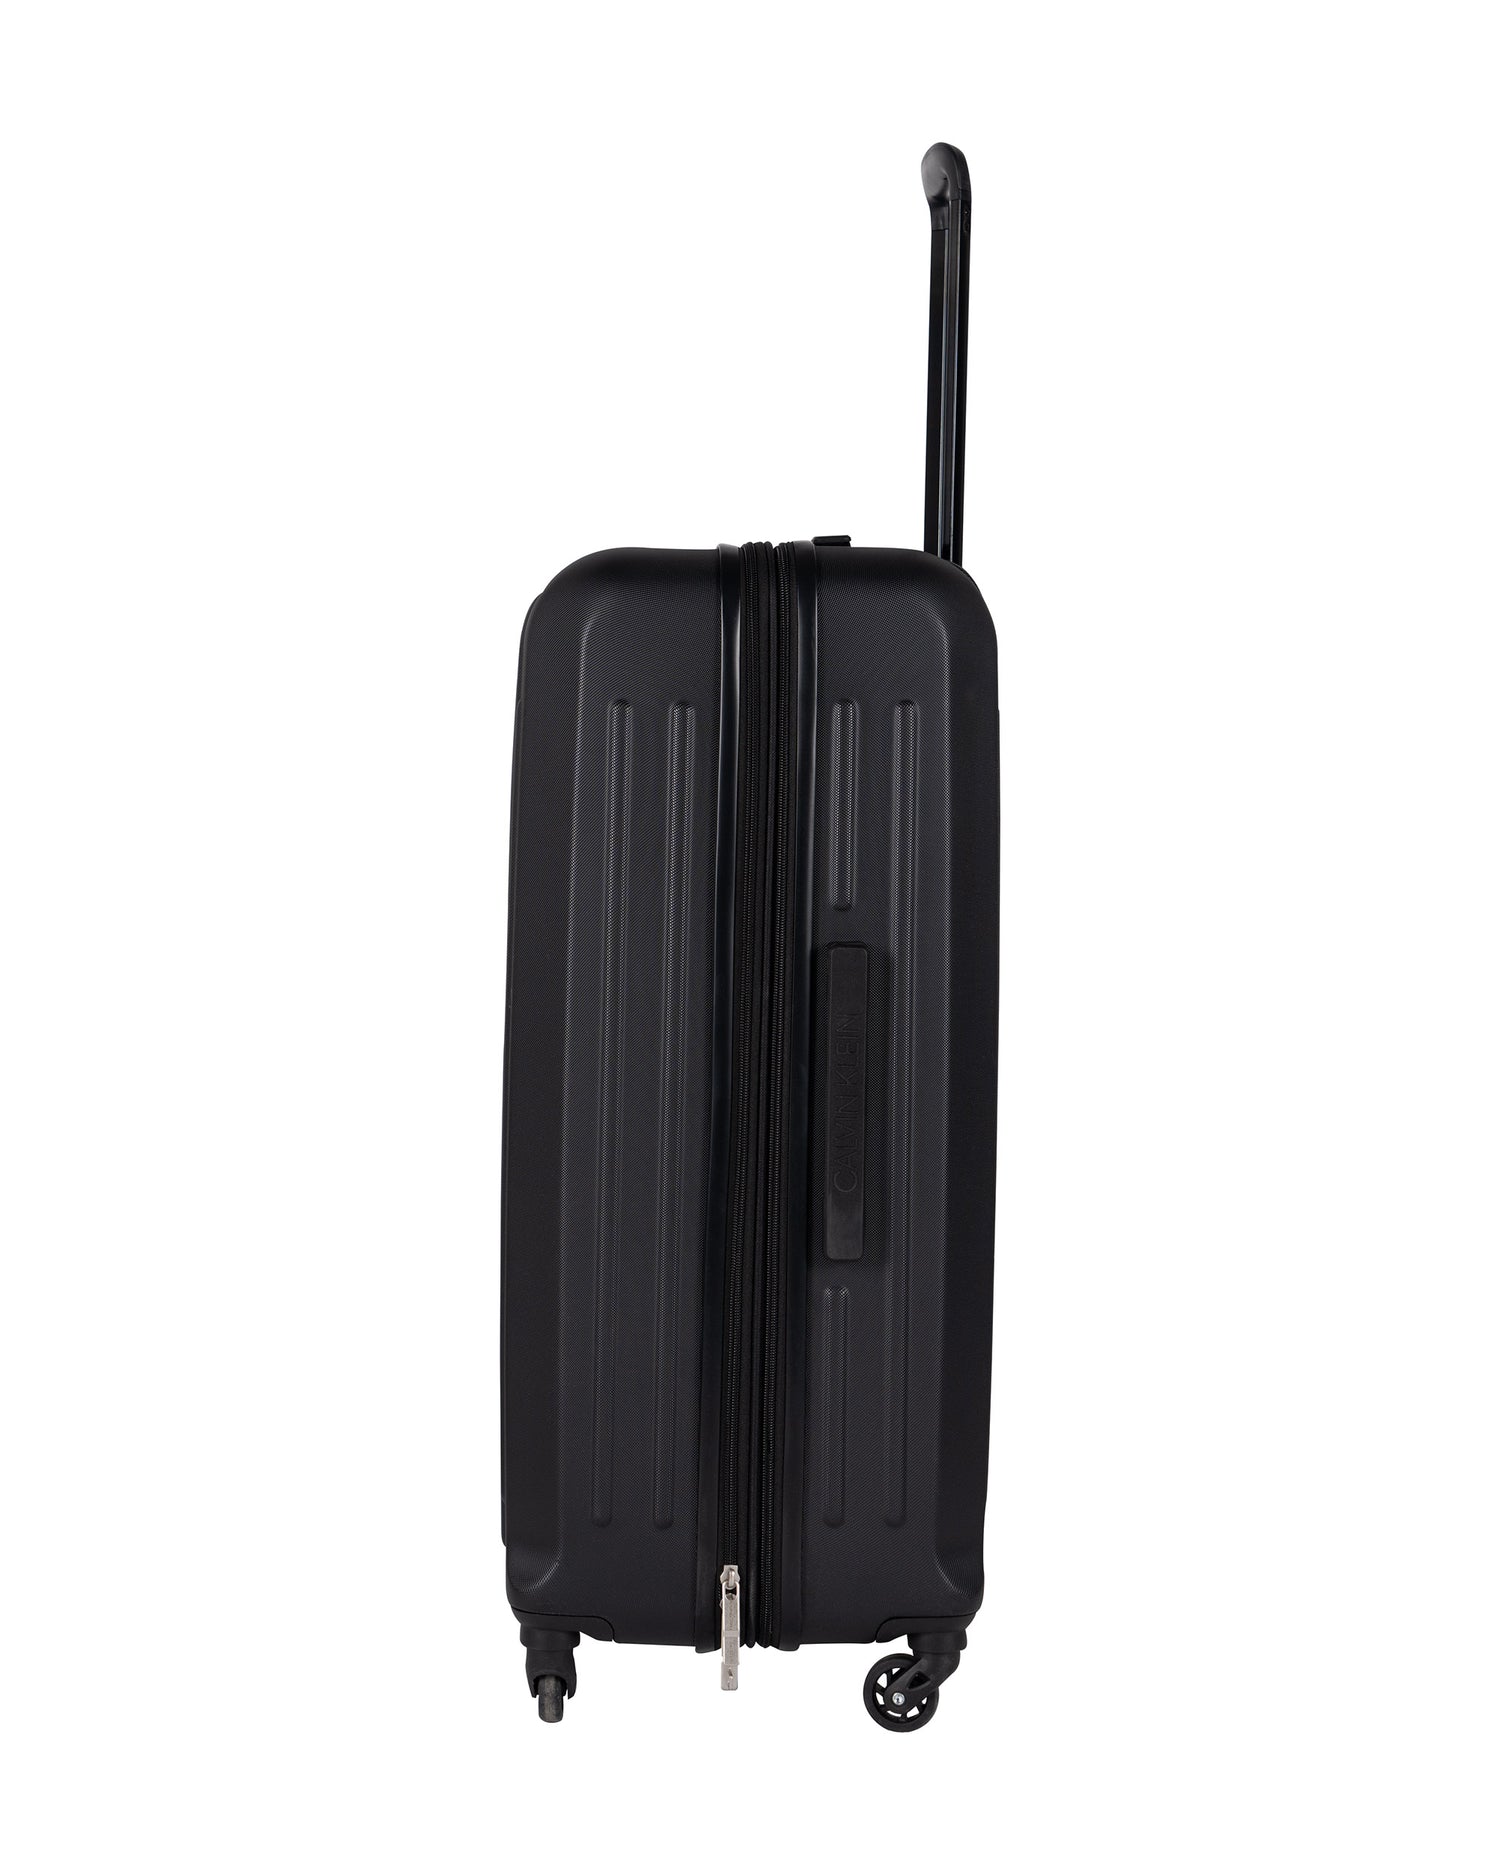 DKNY حقيبة سفر سوداء كبيرة